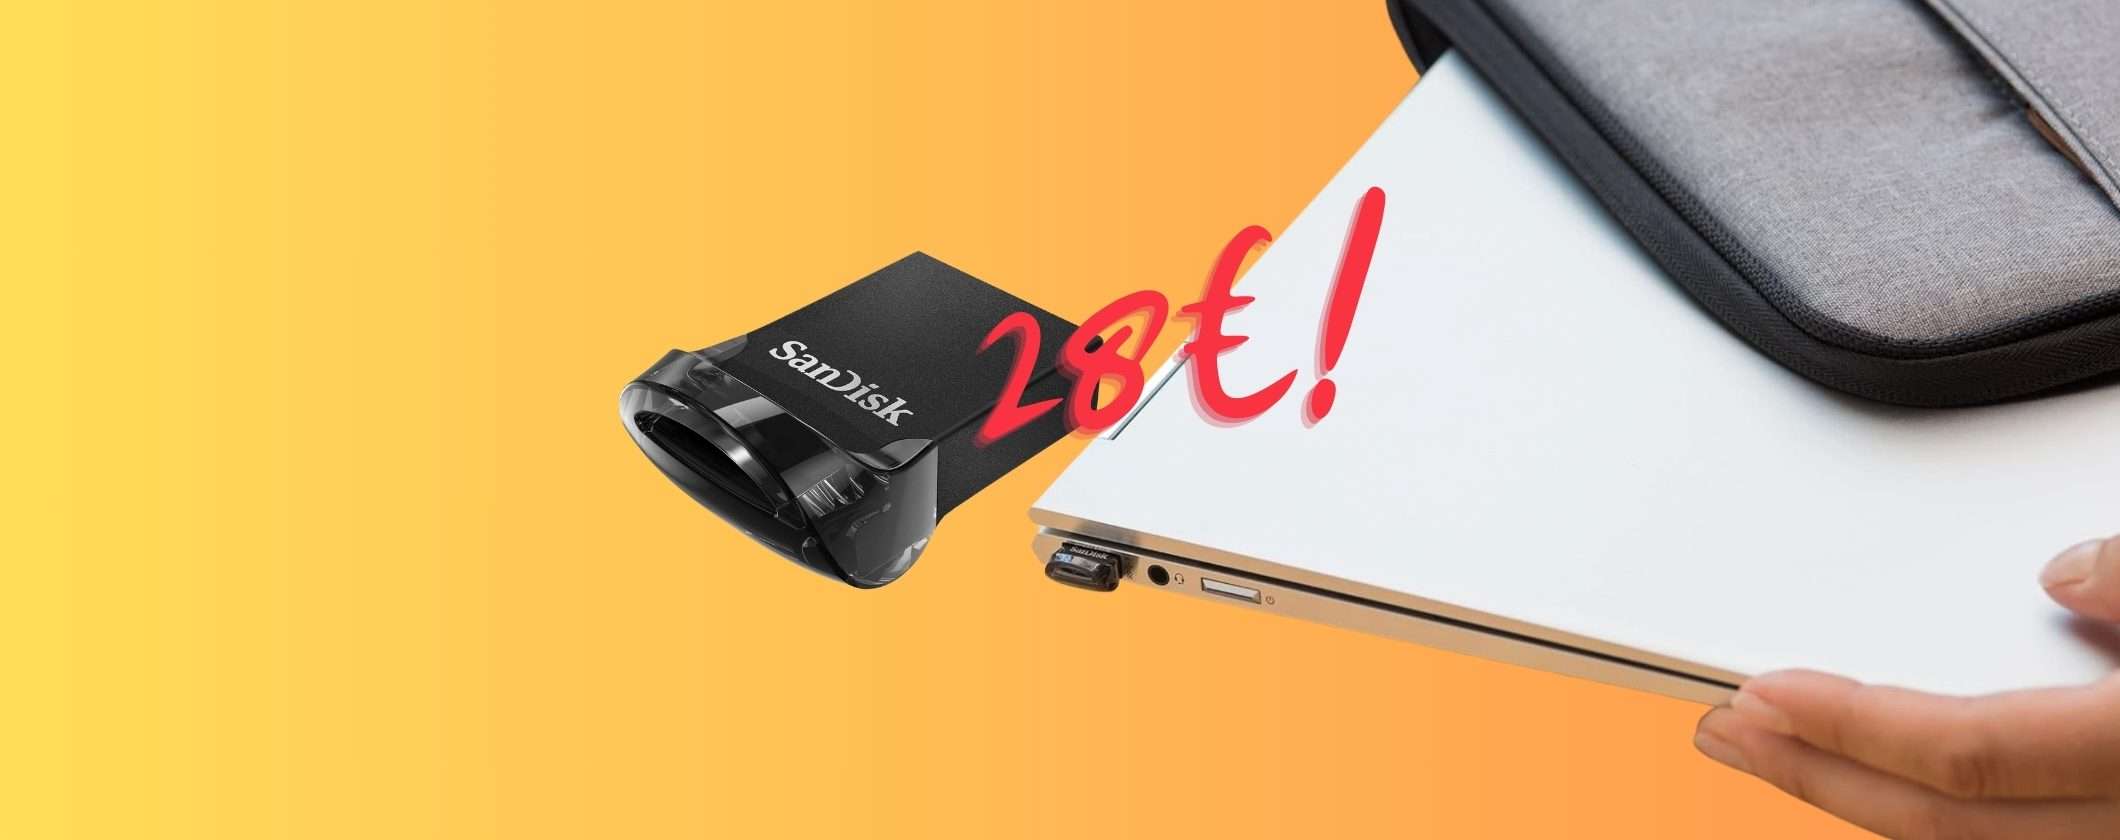 Pendrive Ultra Fit SanDisk 256GB a 28€ con le Offerte di Primavera Amazon